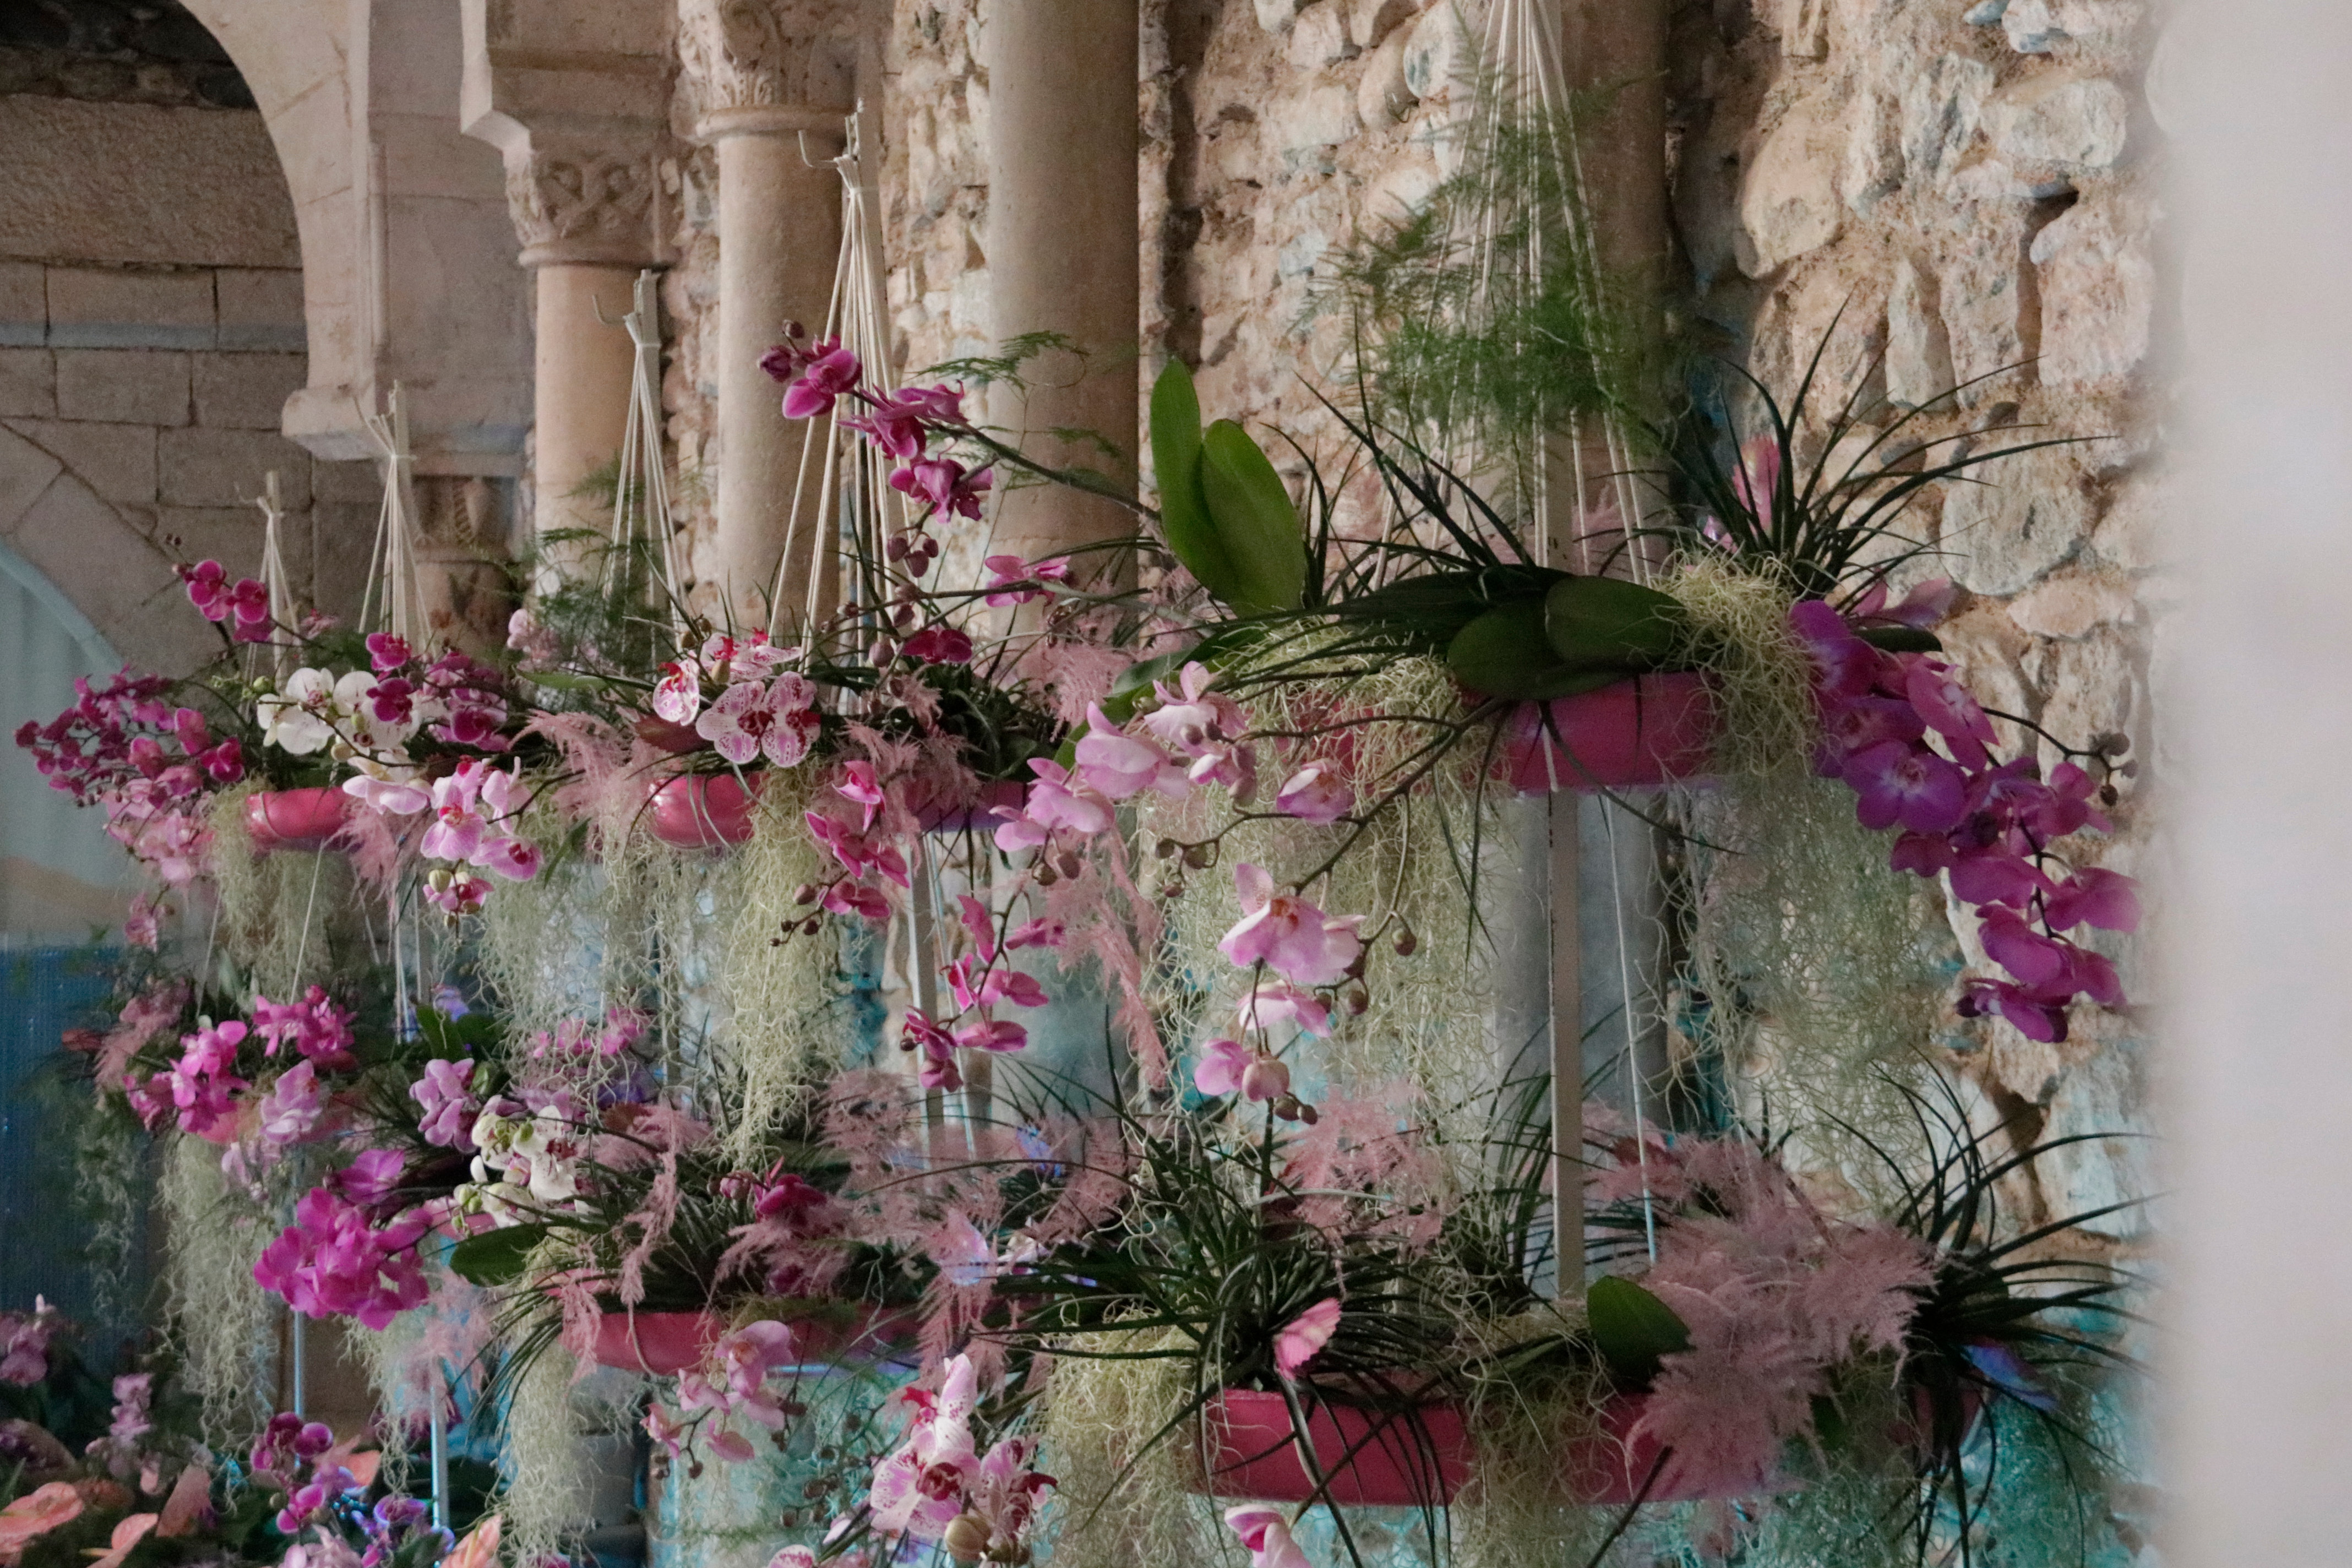 Temps de Flors als banys àrabs de Girona